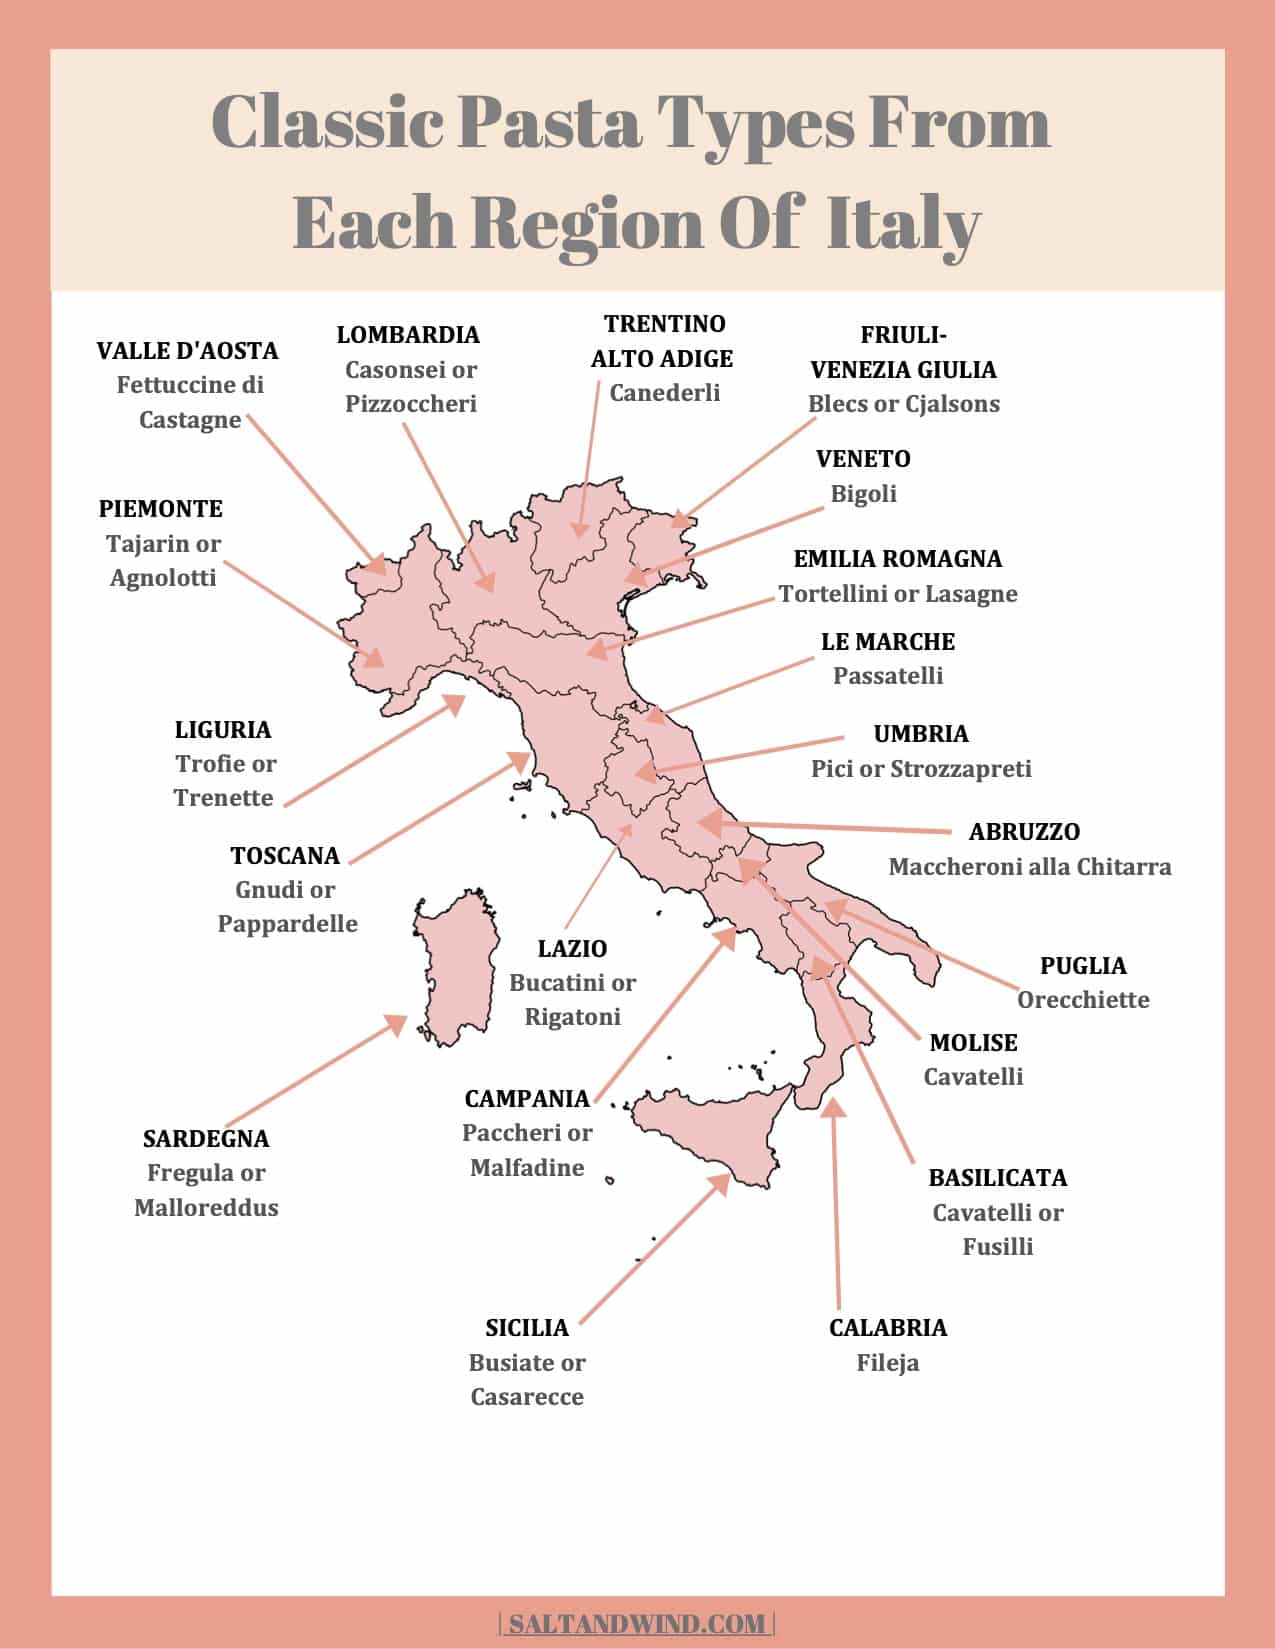 Italian Pasta Shapes By Region